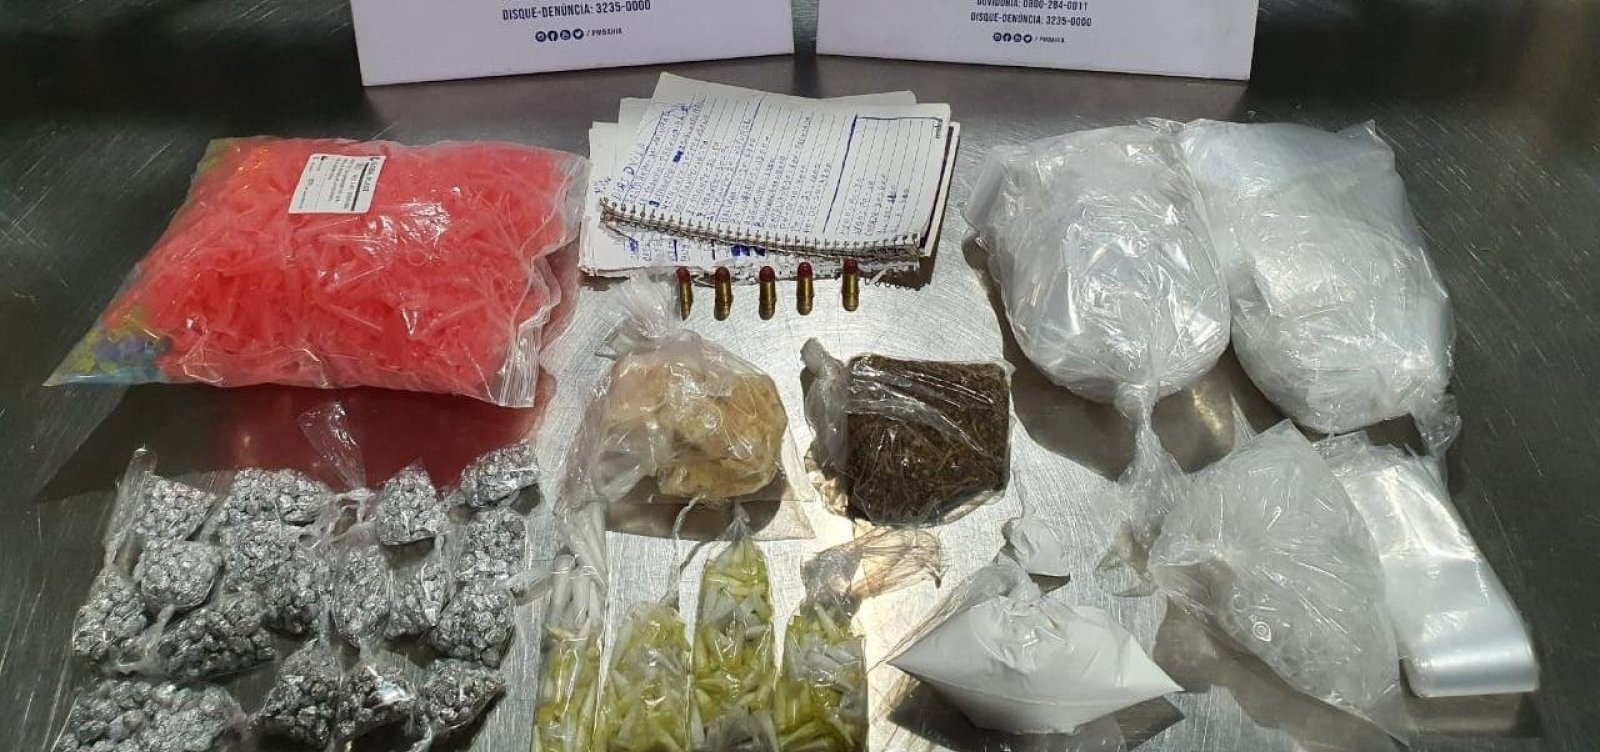 Polícia apreende mil porções de drogas em Sussuarana; suspeitos fugiram